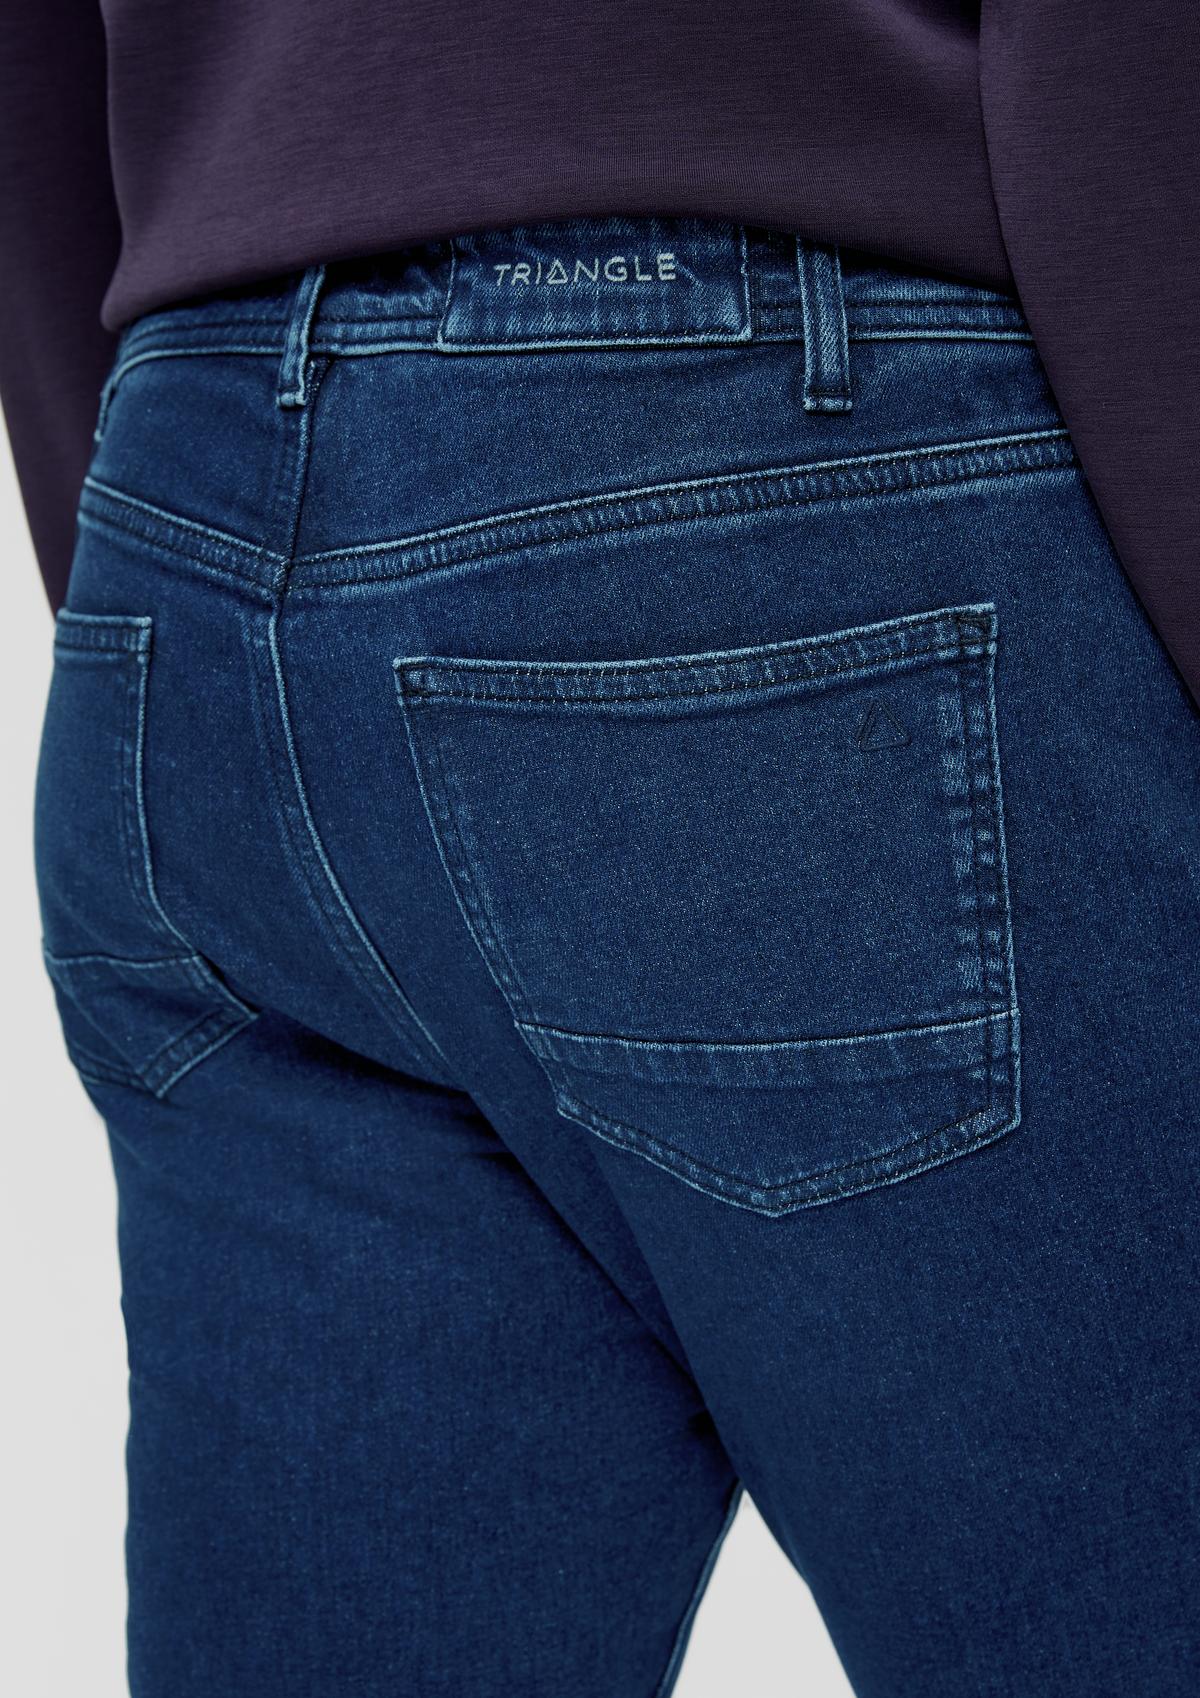 Jeans / skinny fit / mid rise / skinny leg / five-pocket design - blue | s. Oliver | Stretchjeans